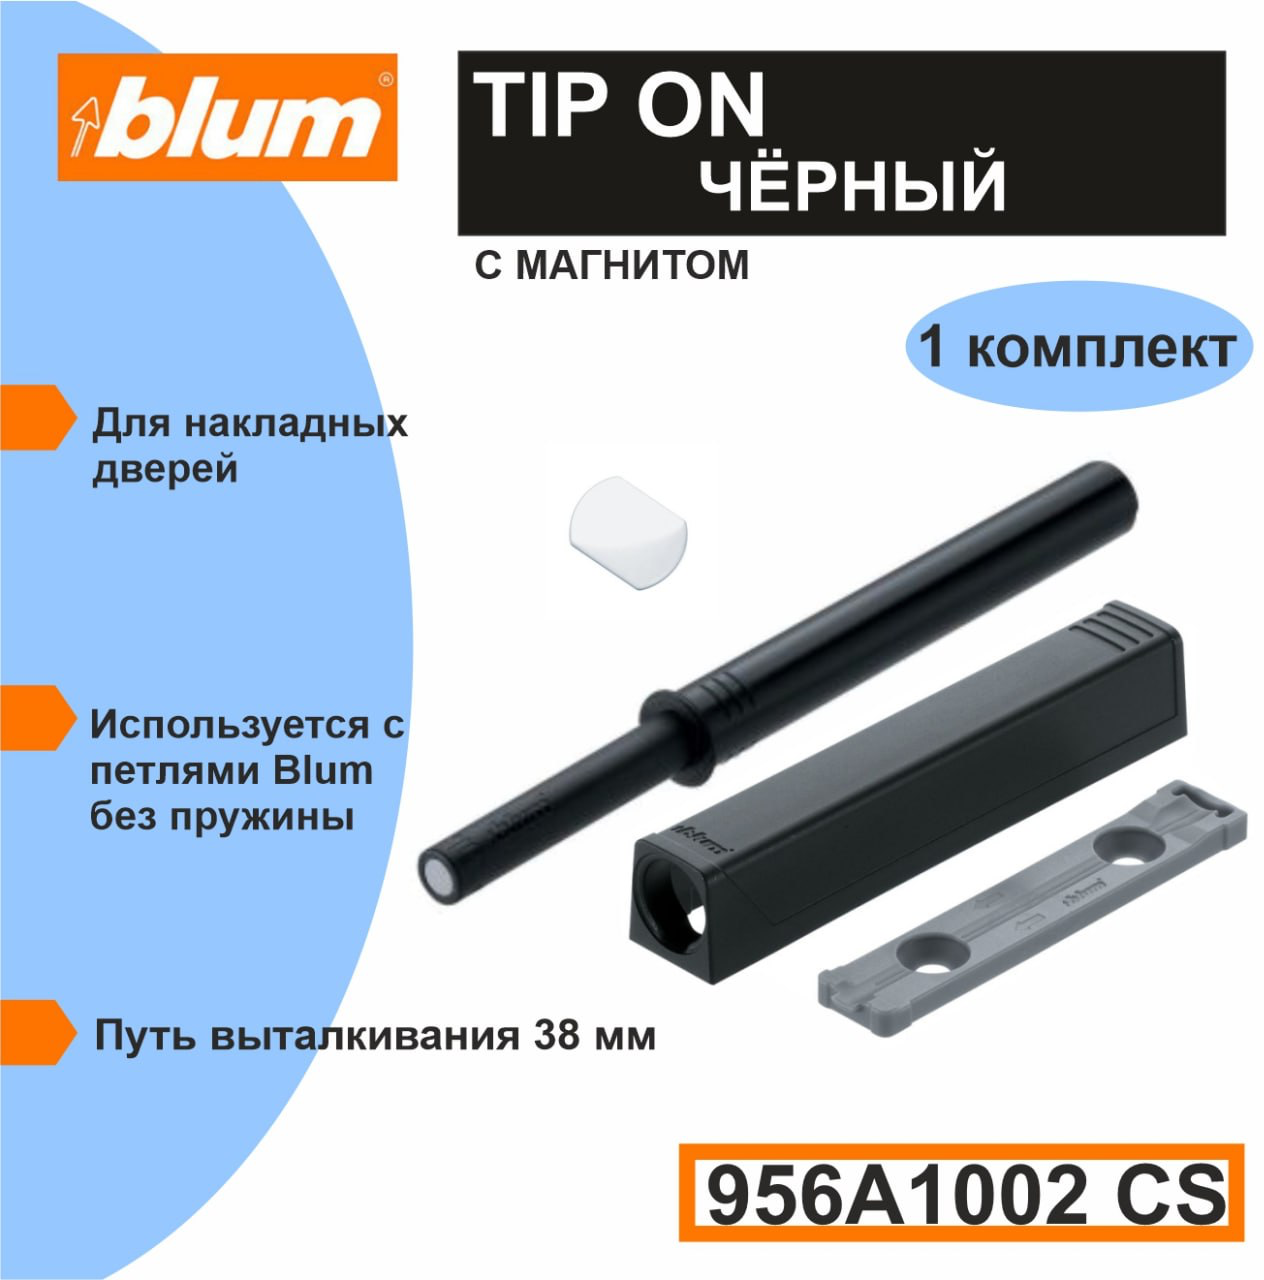 Толкатель фасада Blum TIP-ON (Push-to-open) длинный серый в комплекте с держателем и металлическими пластинами двух видов. Блюм